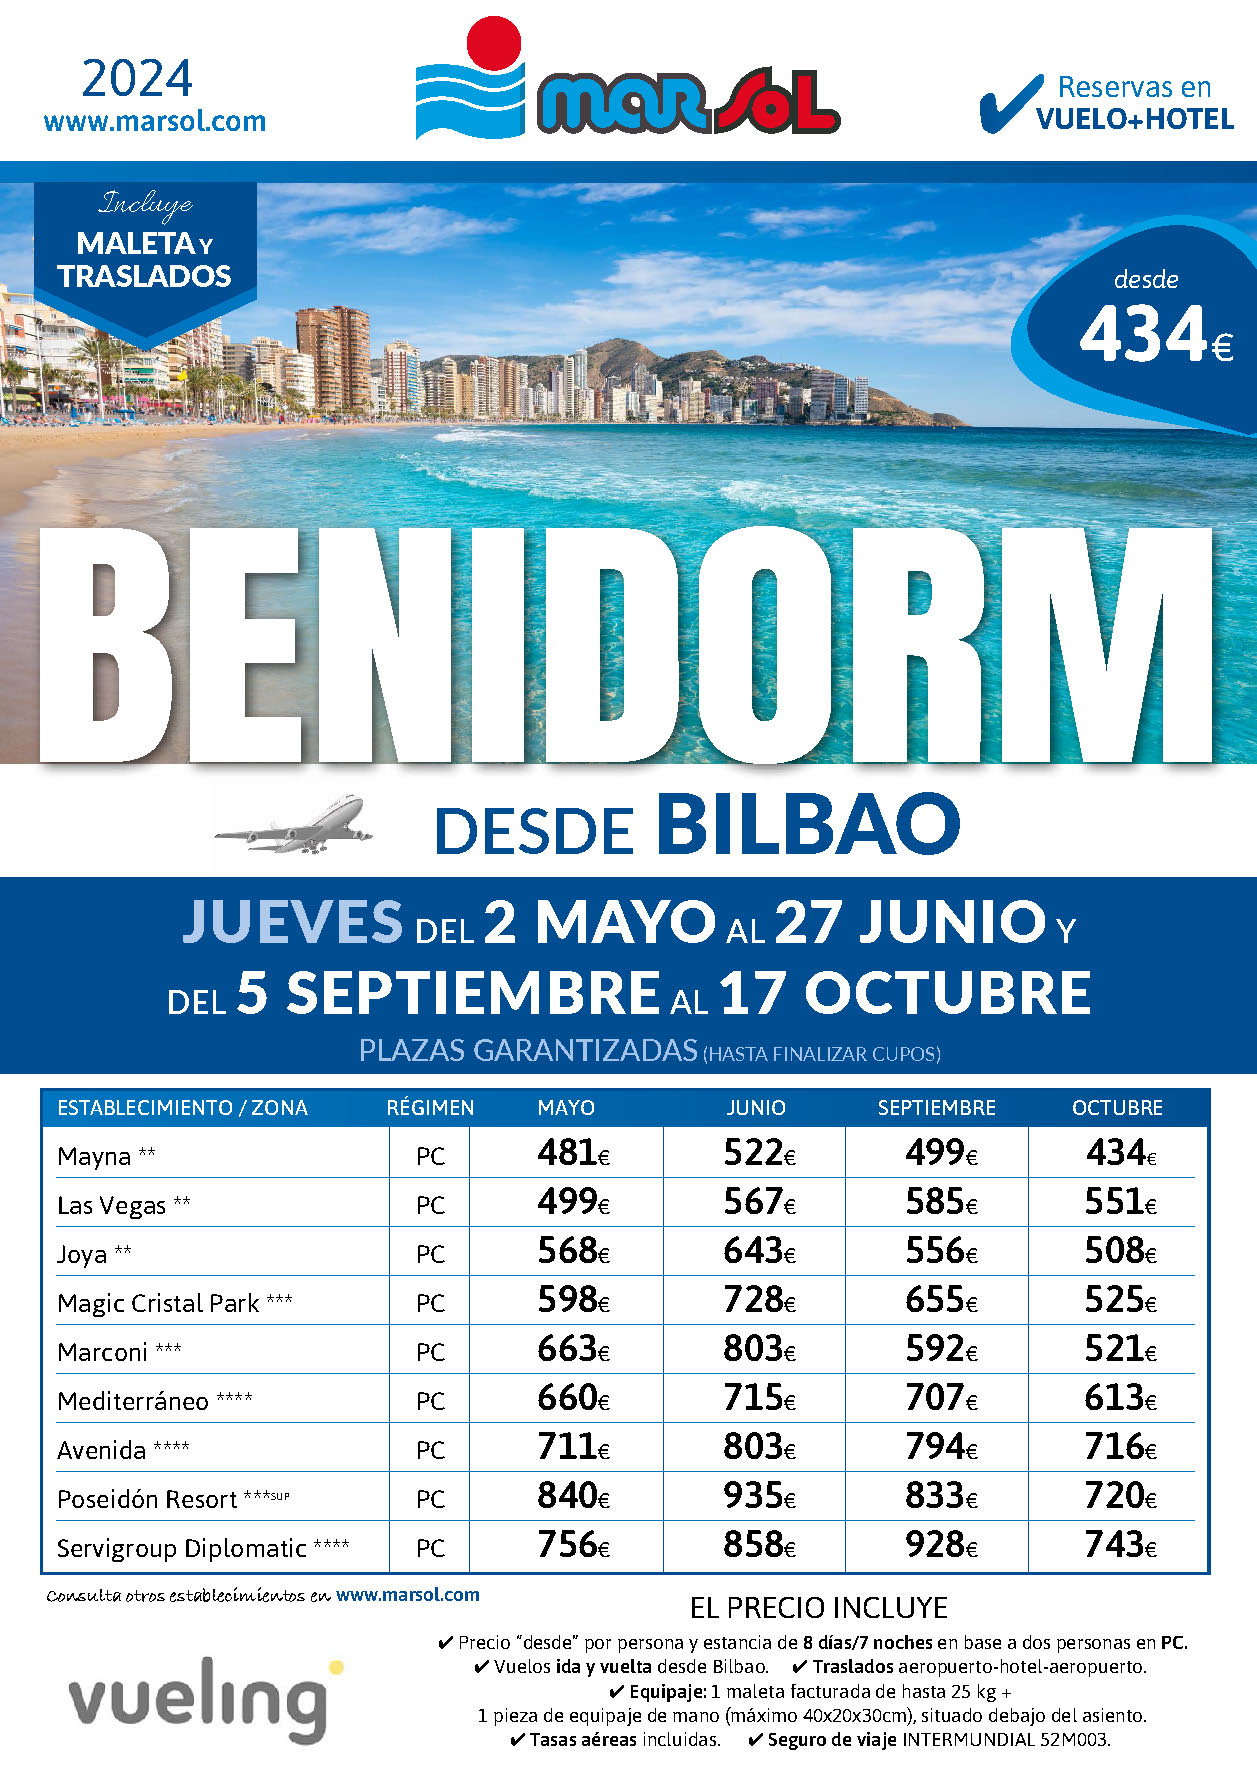 Oferta Marsol Estancia en Benidorm Vuelo Hotel PC Traslados salidas Mayo Junio Septiembre Octubre 2024 vuelo directo desde Bilbao